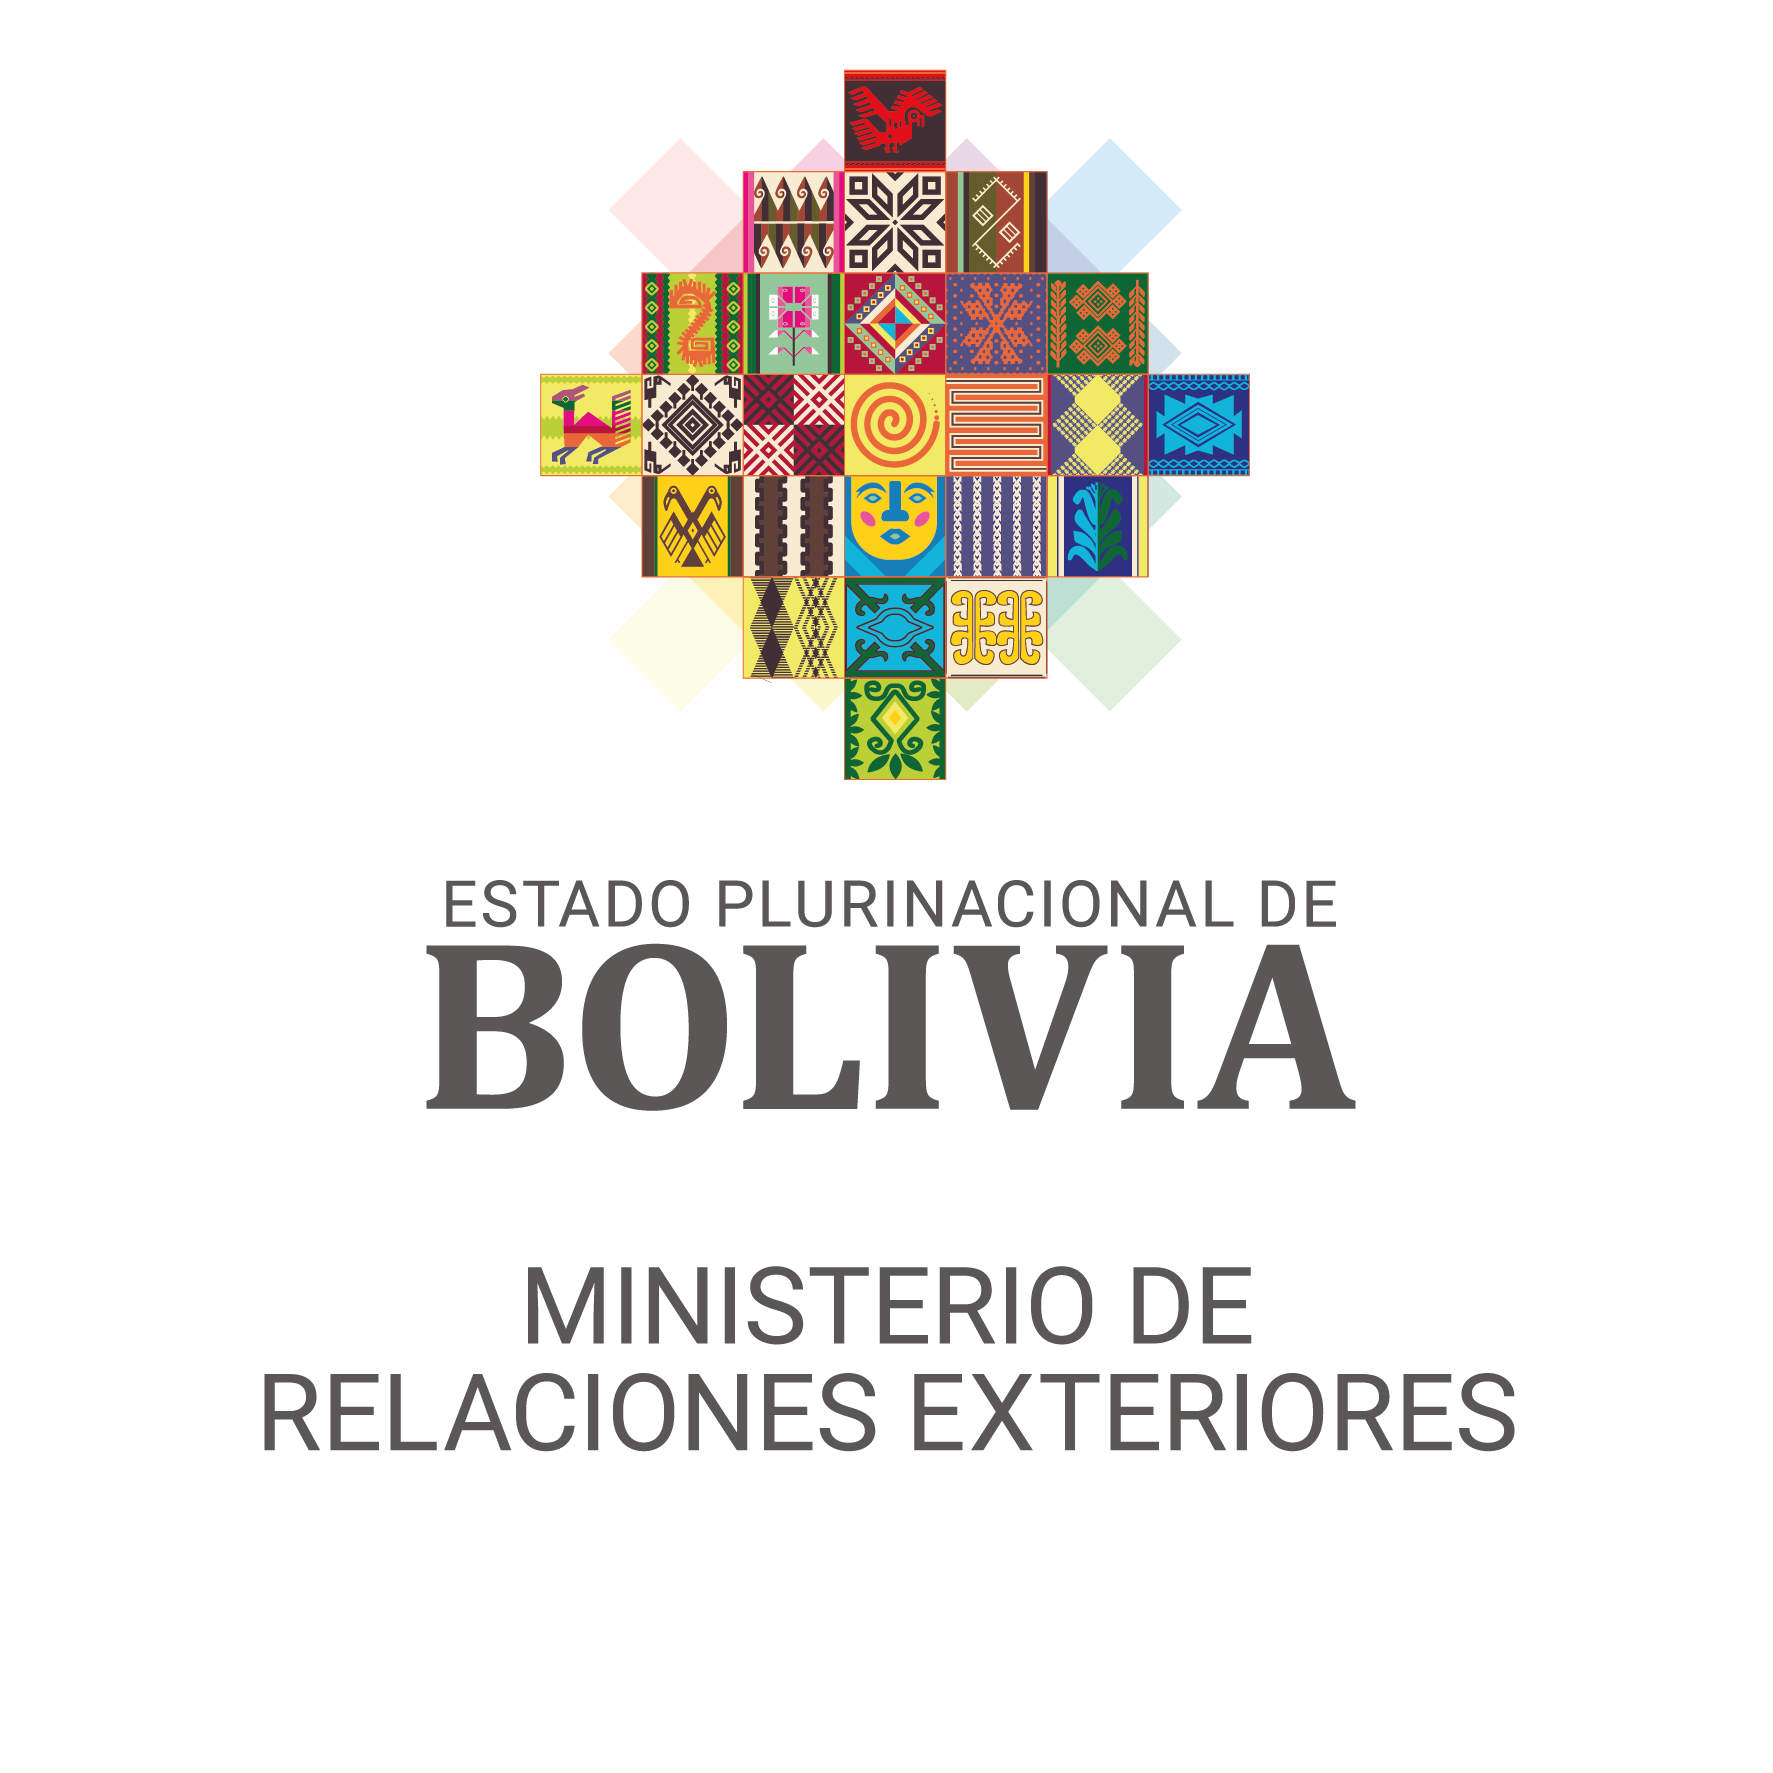 Cancillería realizará el acompañamiento y seguimiento de las acciones judiciales vinculadas al deceso del joven boliviano en Antofagasta